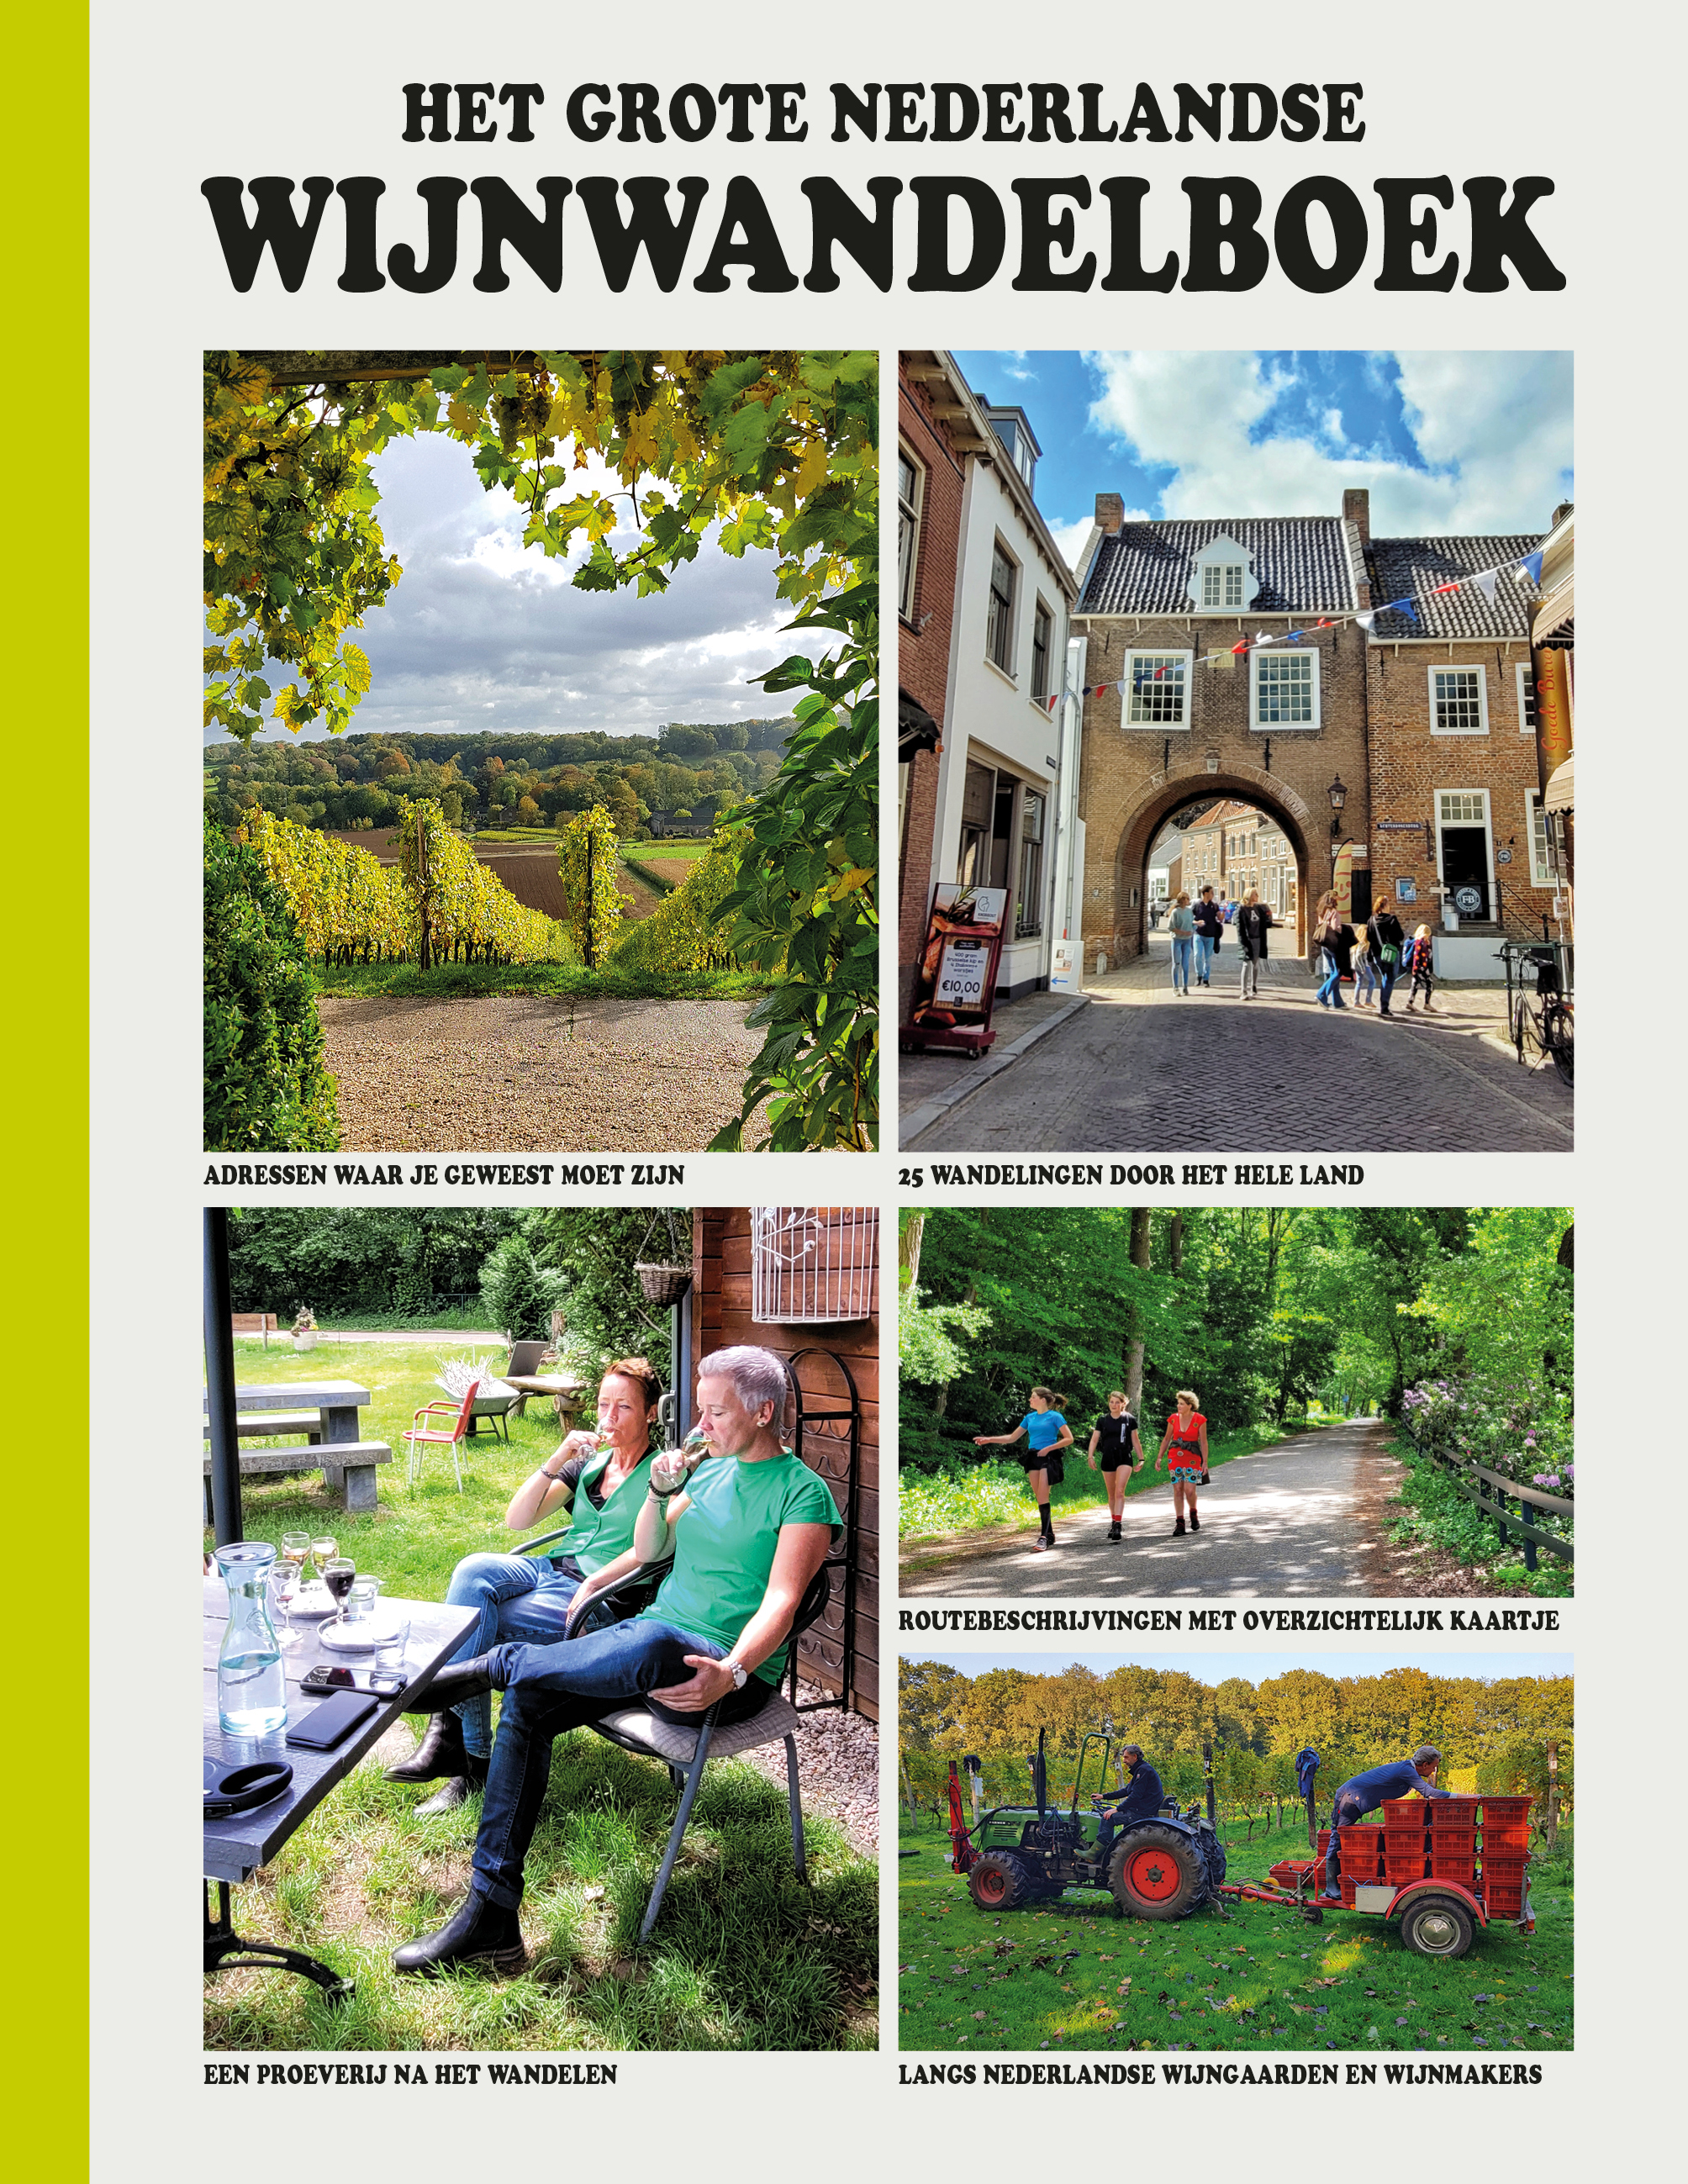 Het Grote Nederlandse Wijnwandelboek (ANWB)